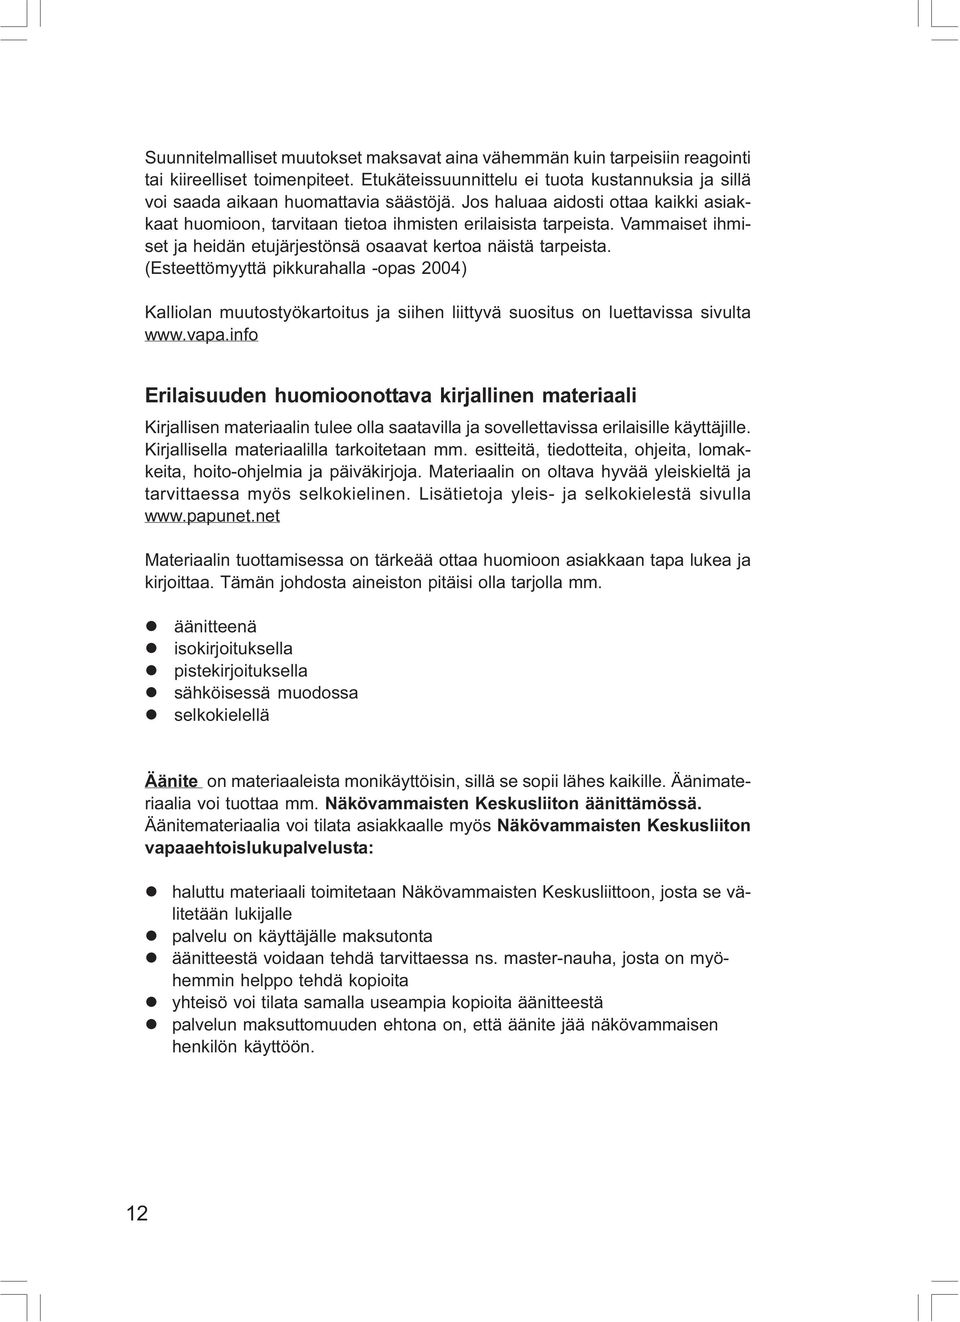 (Esteettömyyttä pikkurahalla -opas 2004) Kalliolan muutostyökartoitus ja siihen liittyvä suositus on luettavissa sivulta www.vapa.